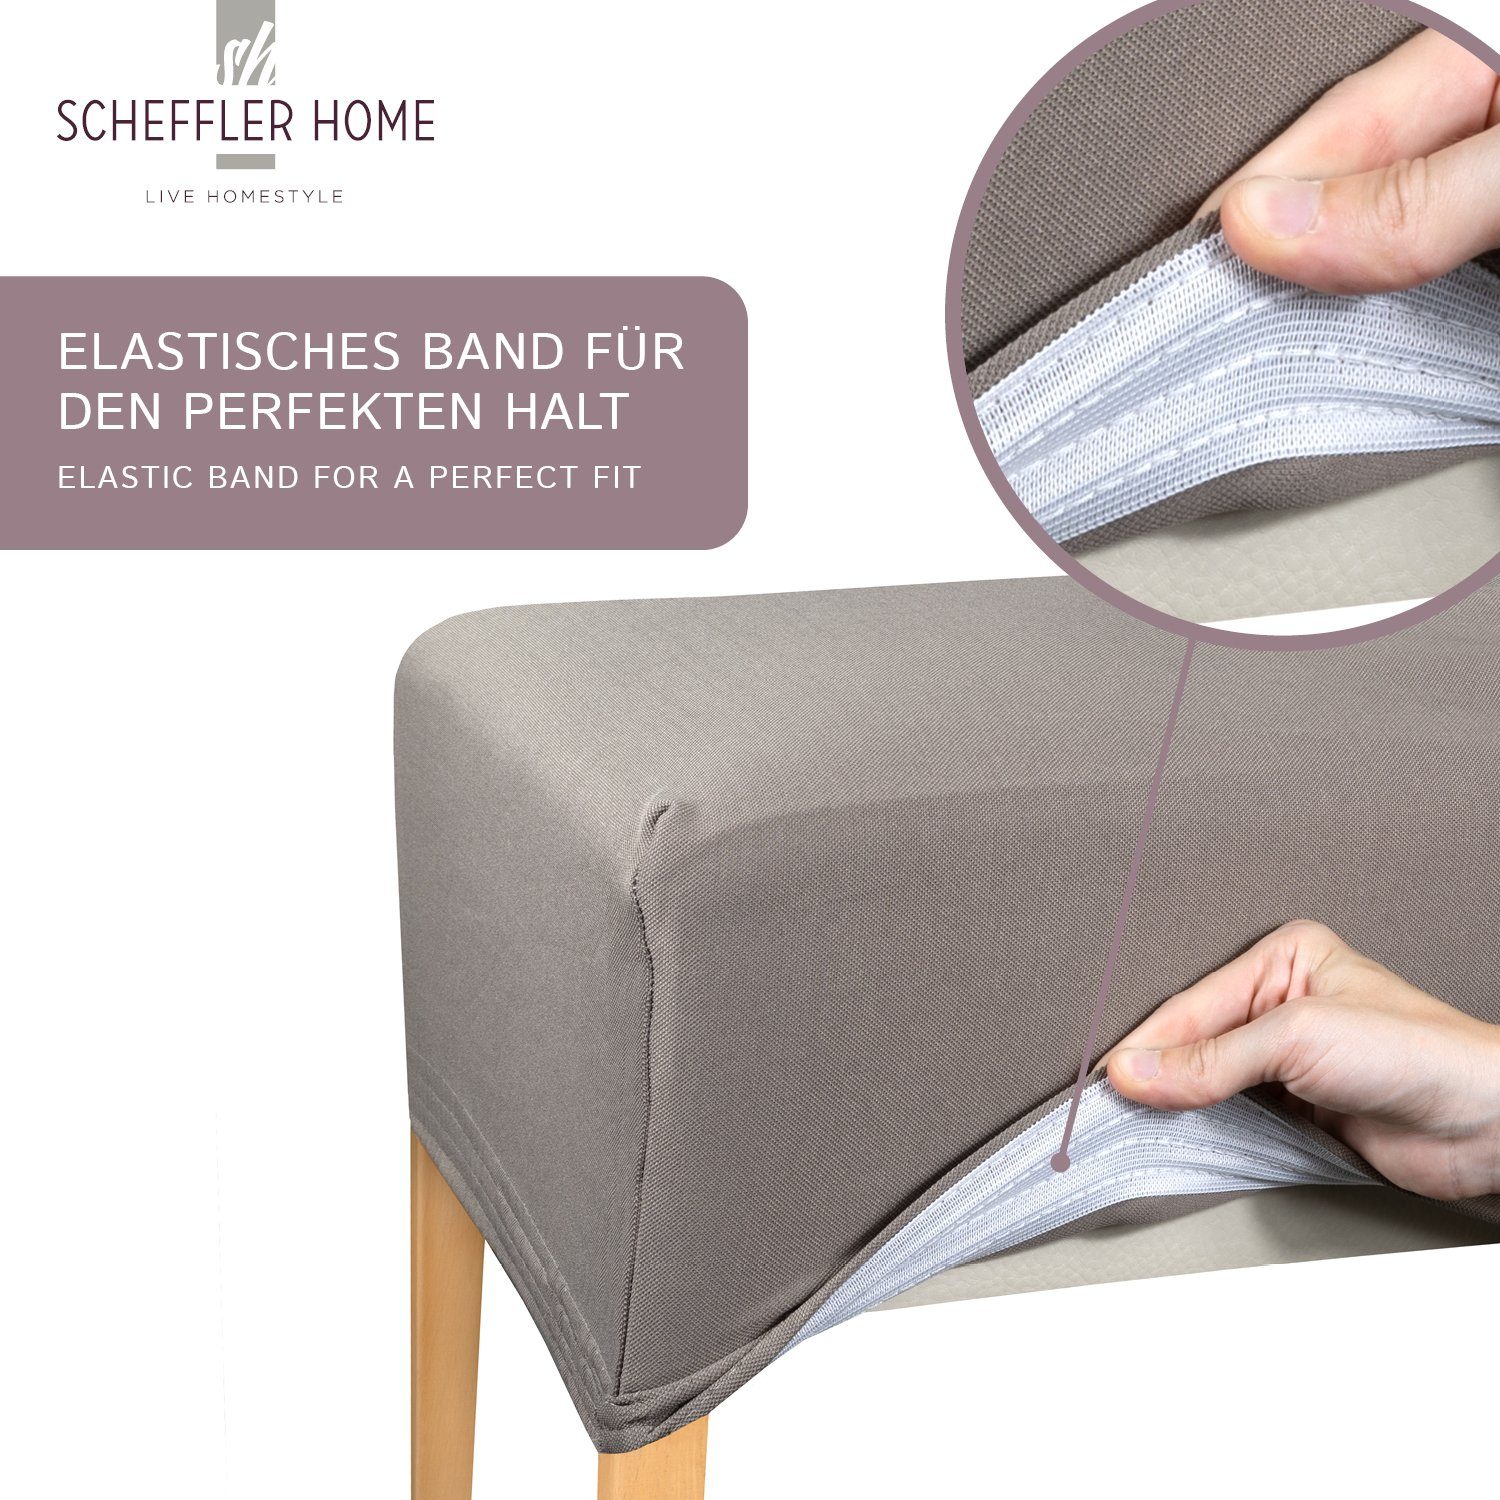 Effekt, sh HOMESTYLE Marie Stuhlbezug Lotus und Bordeaux Sitzbezug SCHEFFLER-HOME mit Fleckenschutz LIVE elastisch